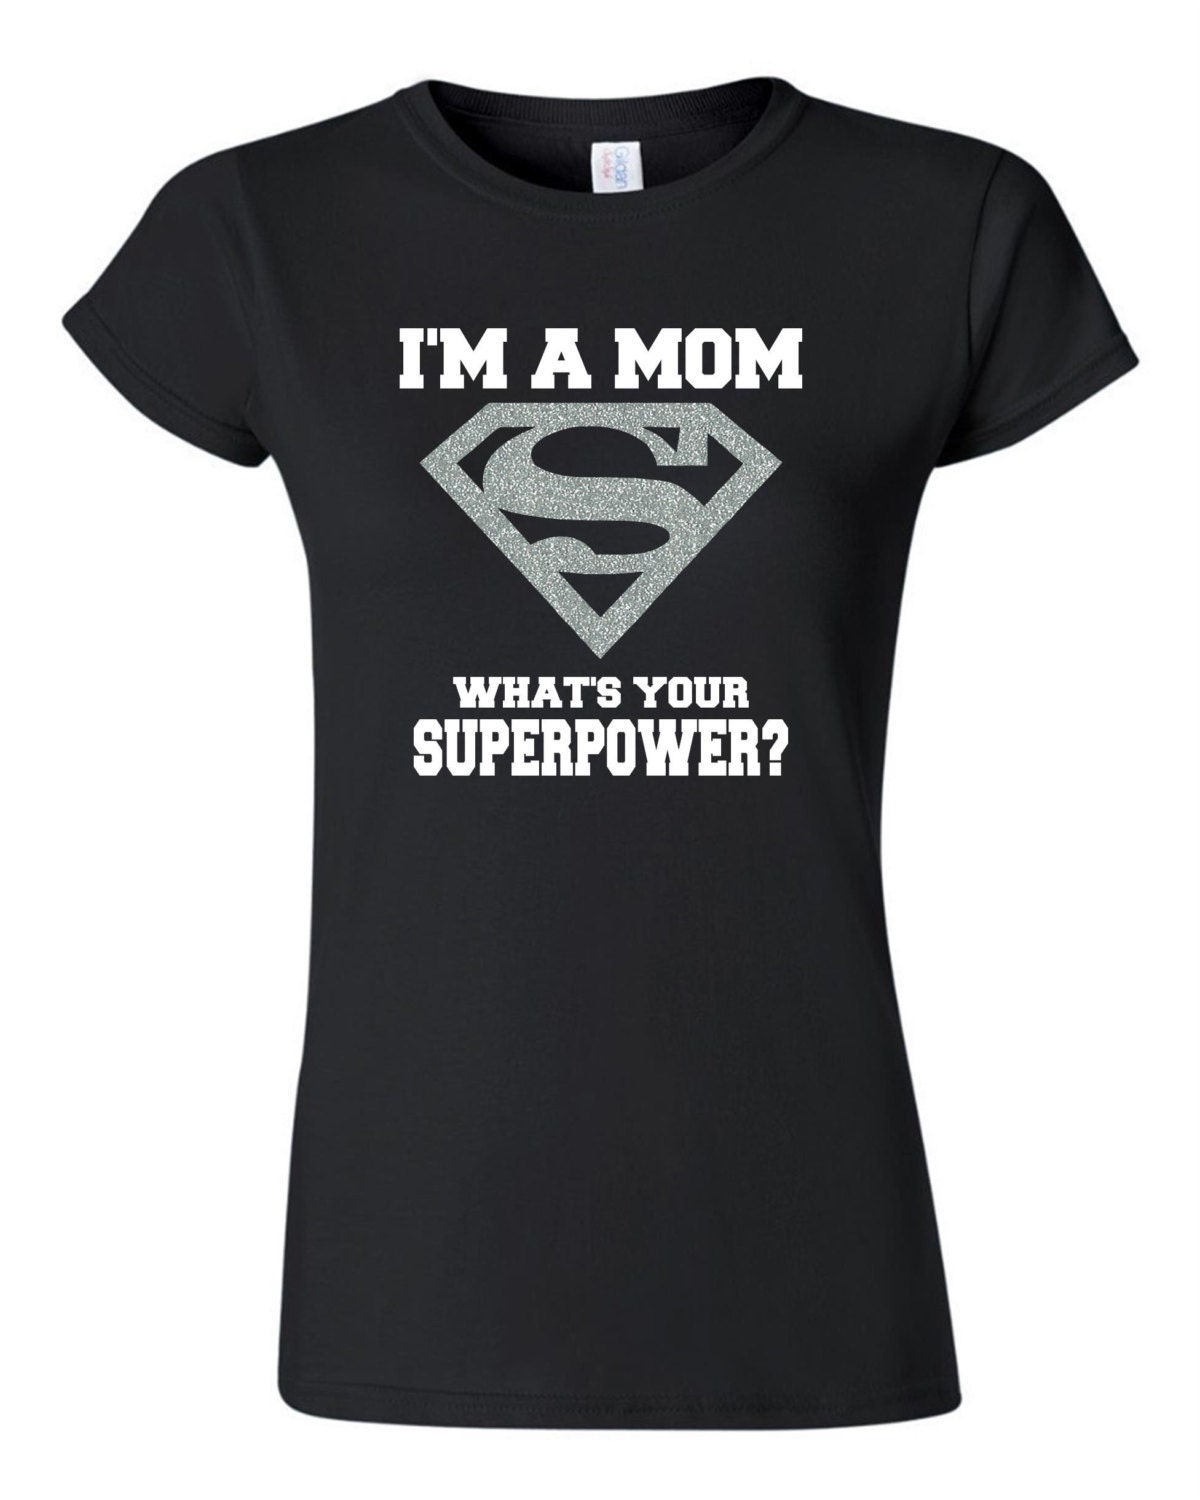 Super Mom Shirt T-shirt. Super Mom Women's Superpower